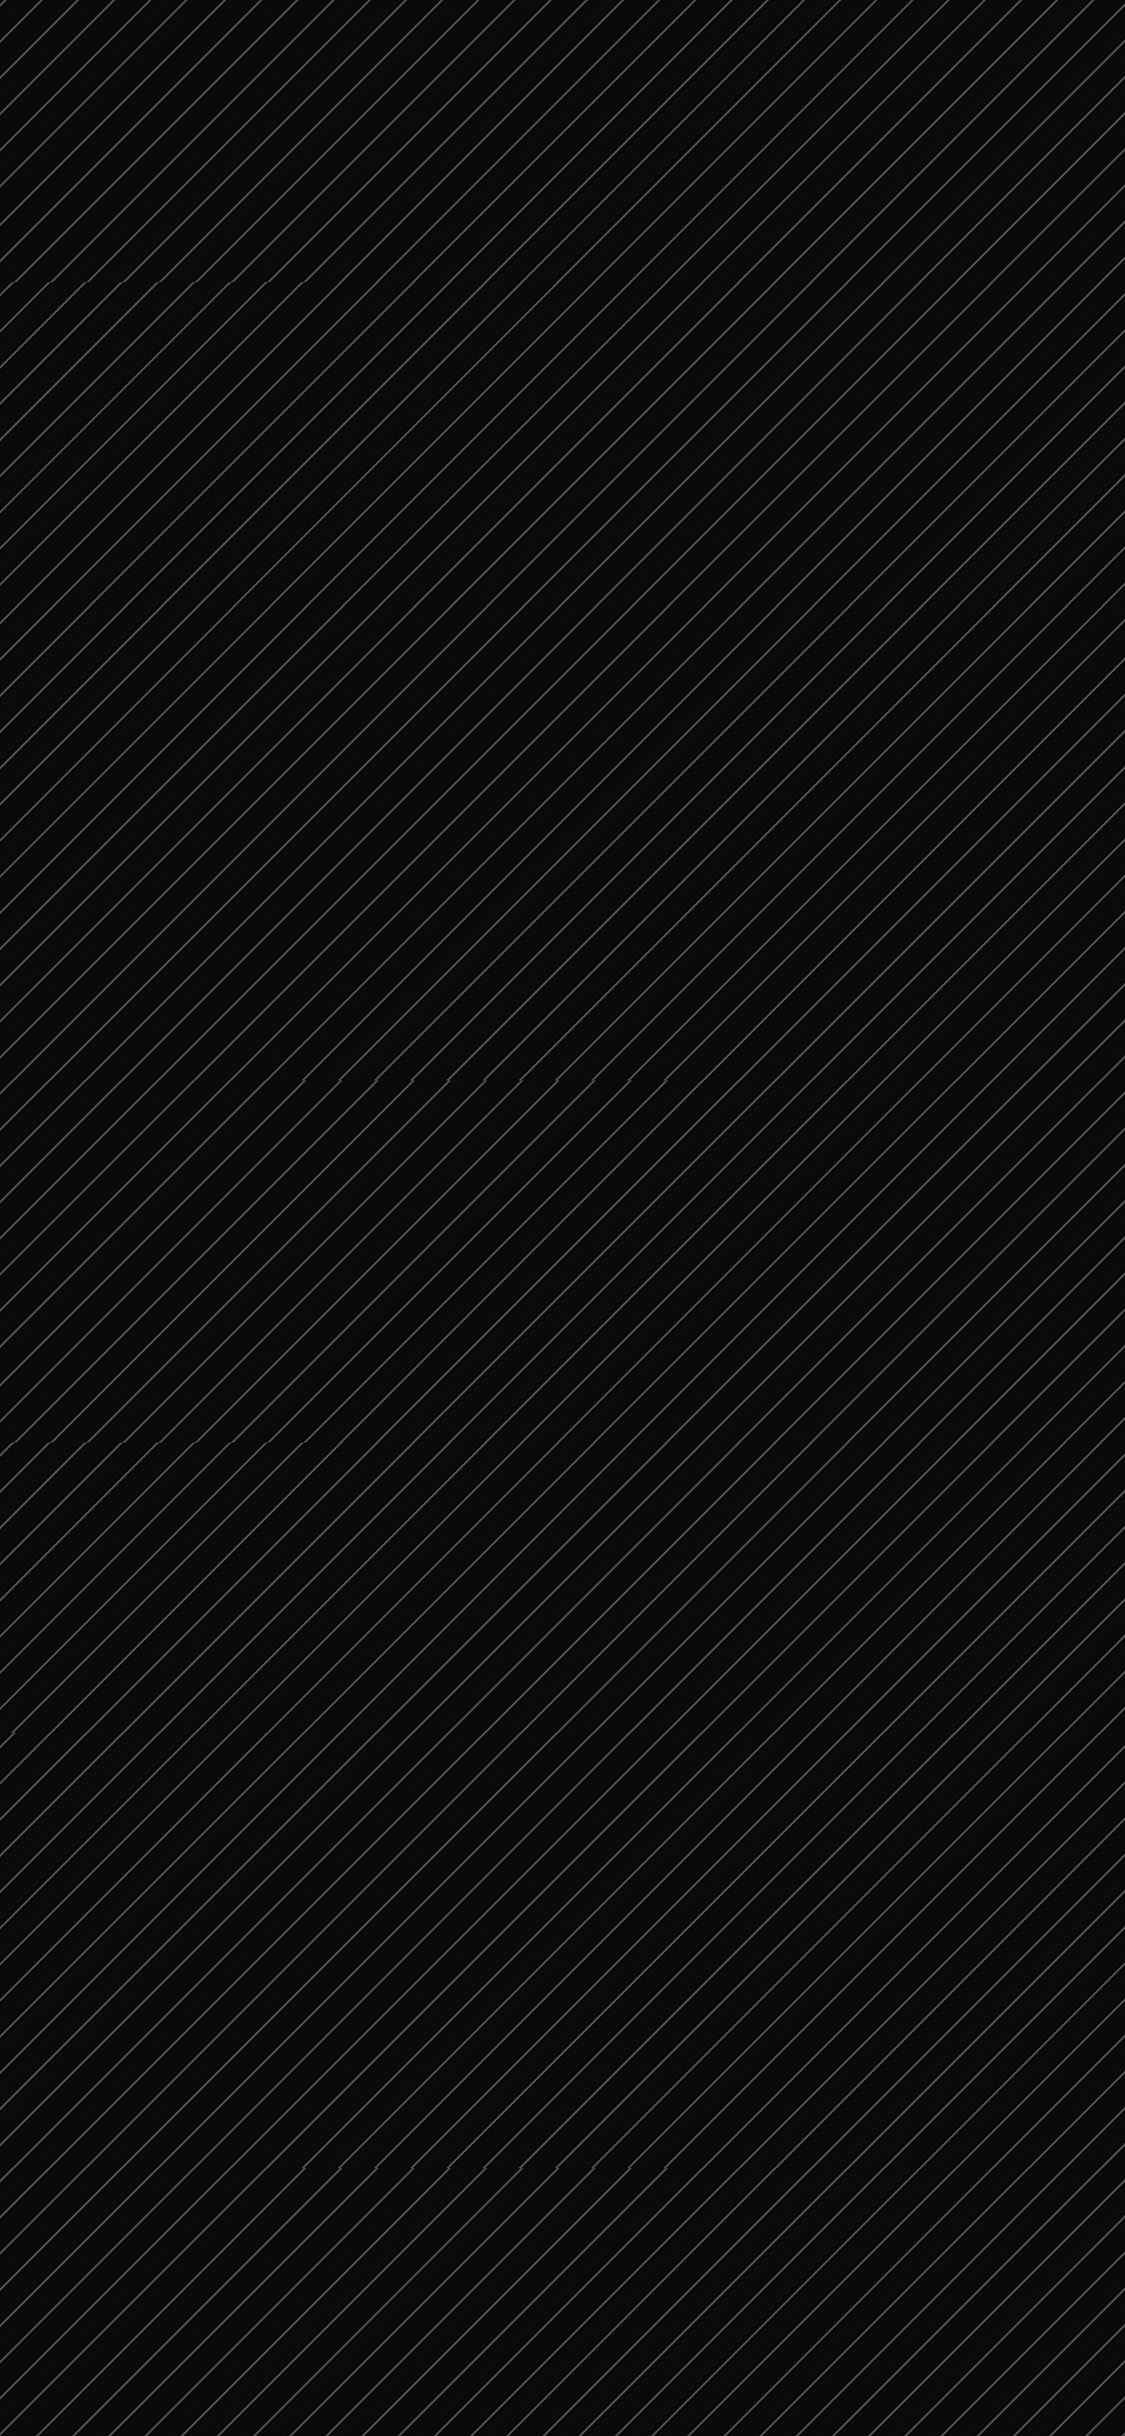 iPhone X wallpaper. line dark pattern background black